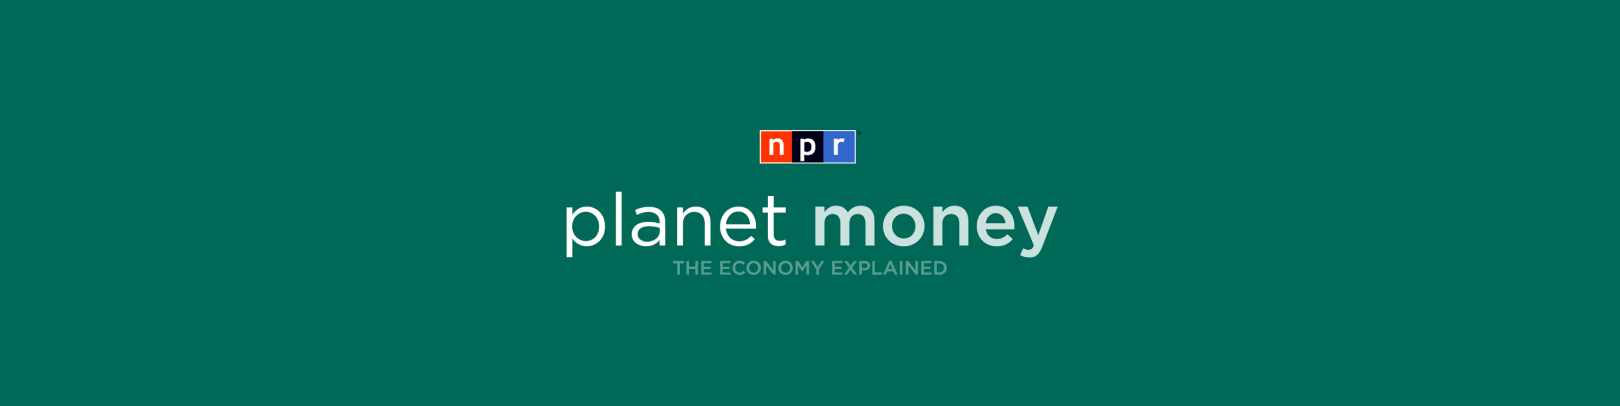 planet money